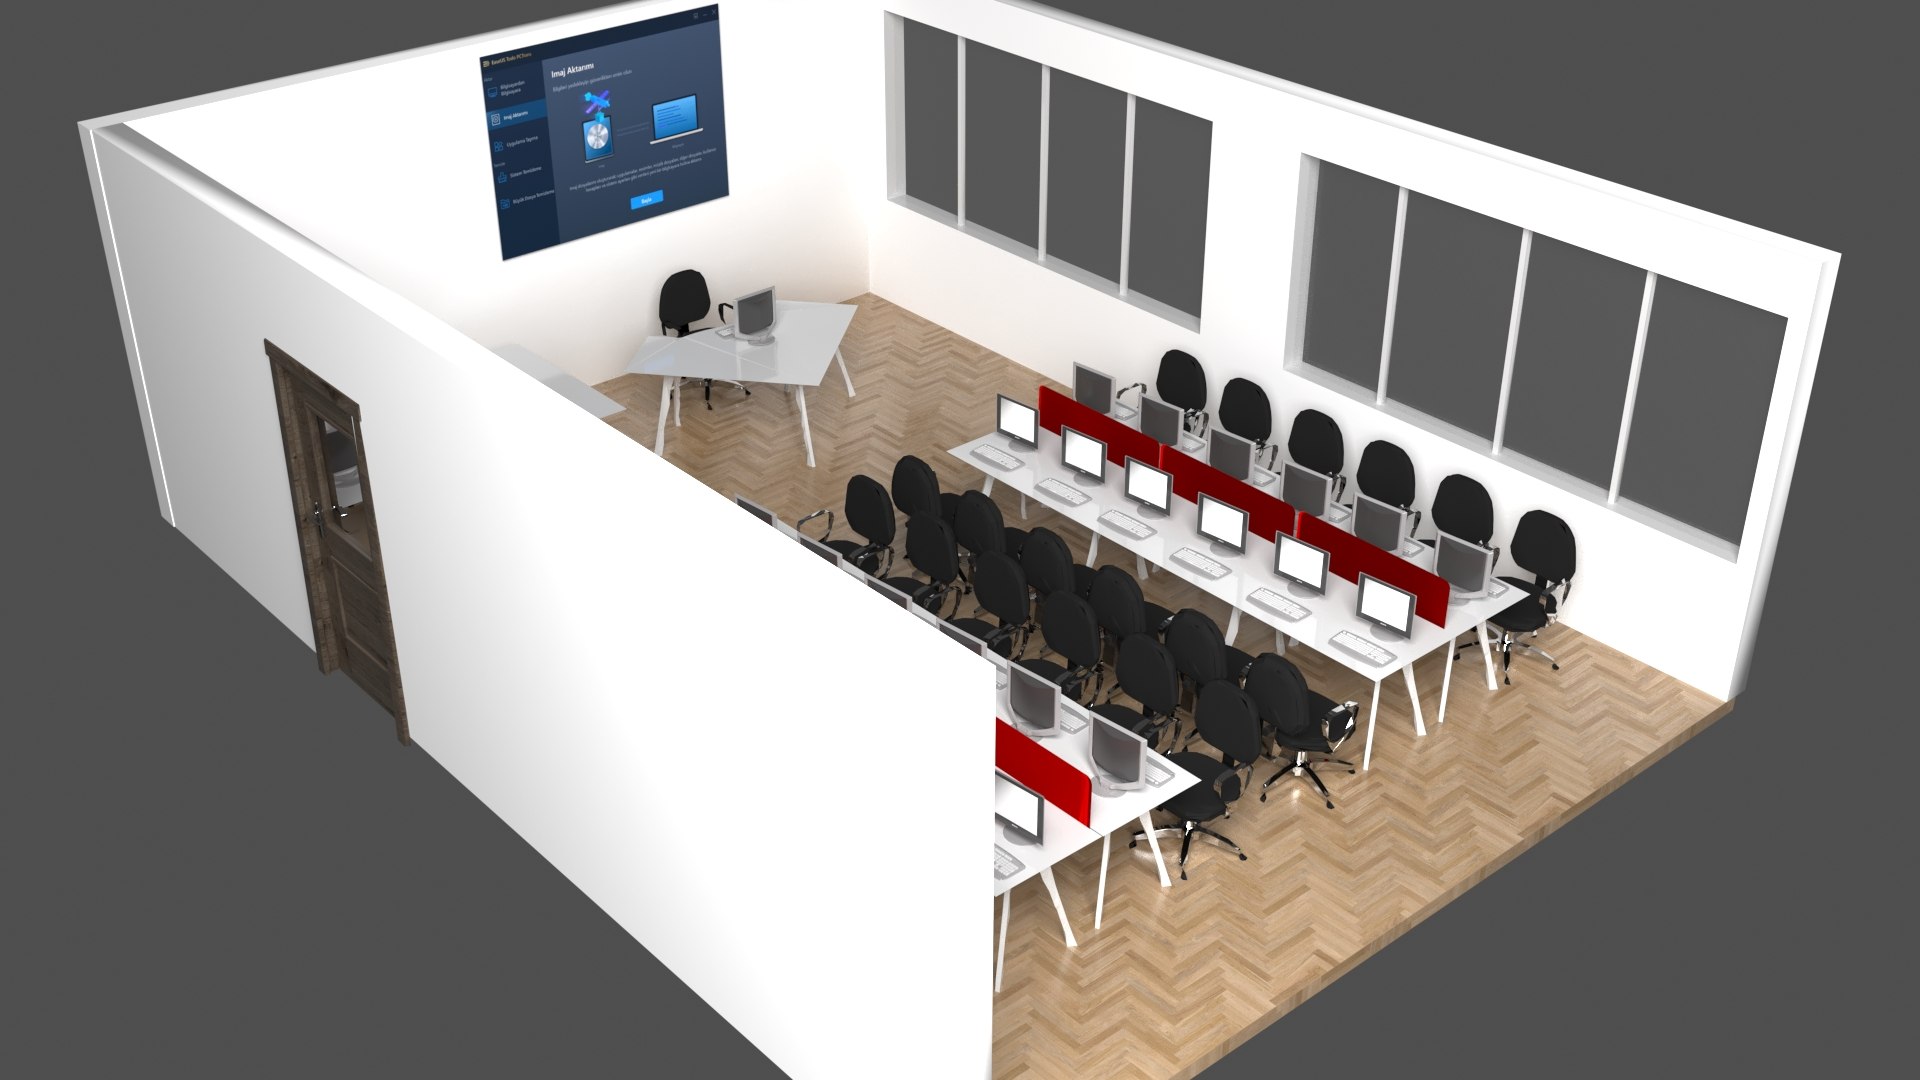 PC Training Classroom 3D Model - TurboSquid 2059018